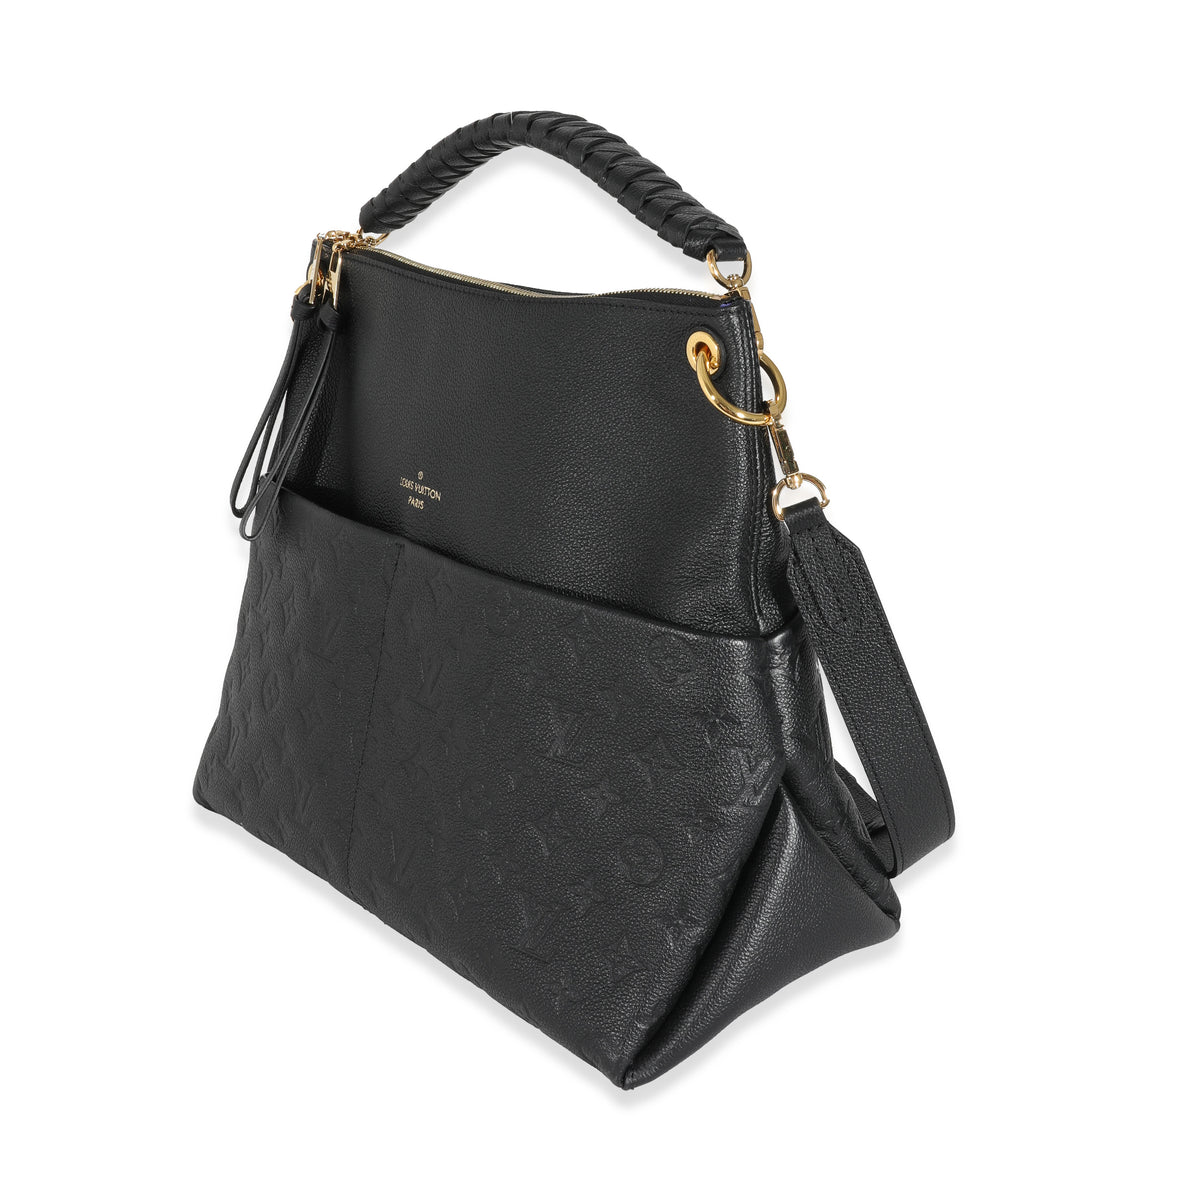 MAIDA HOBO BAG IN BLACK  Bags designer fashion, Fashion handbags